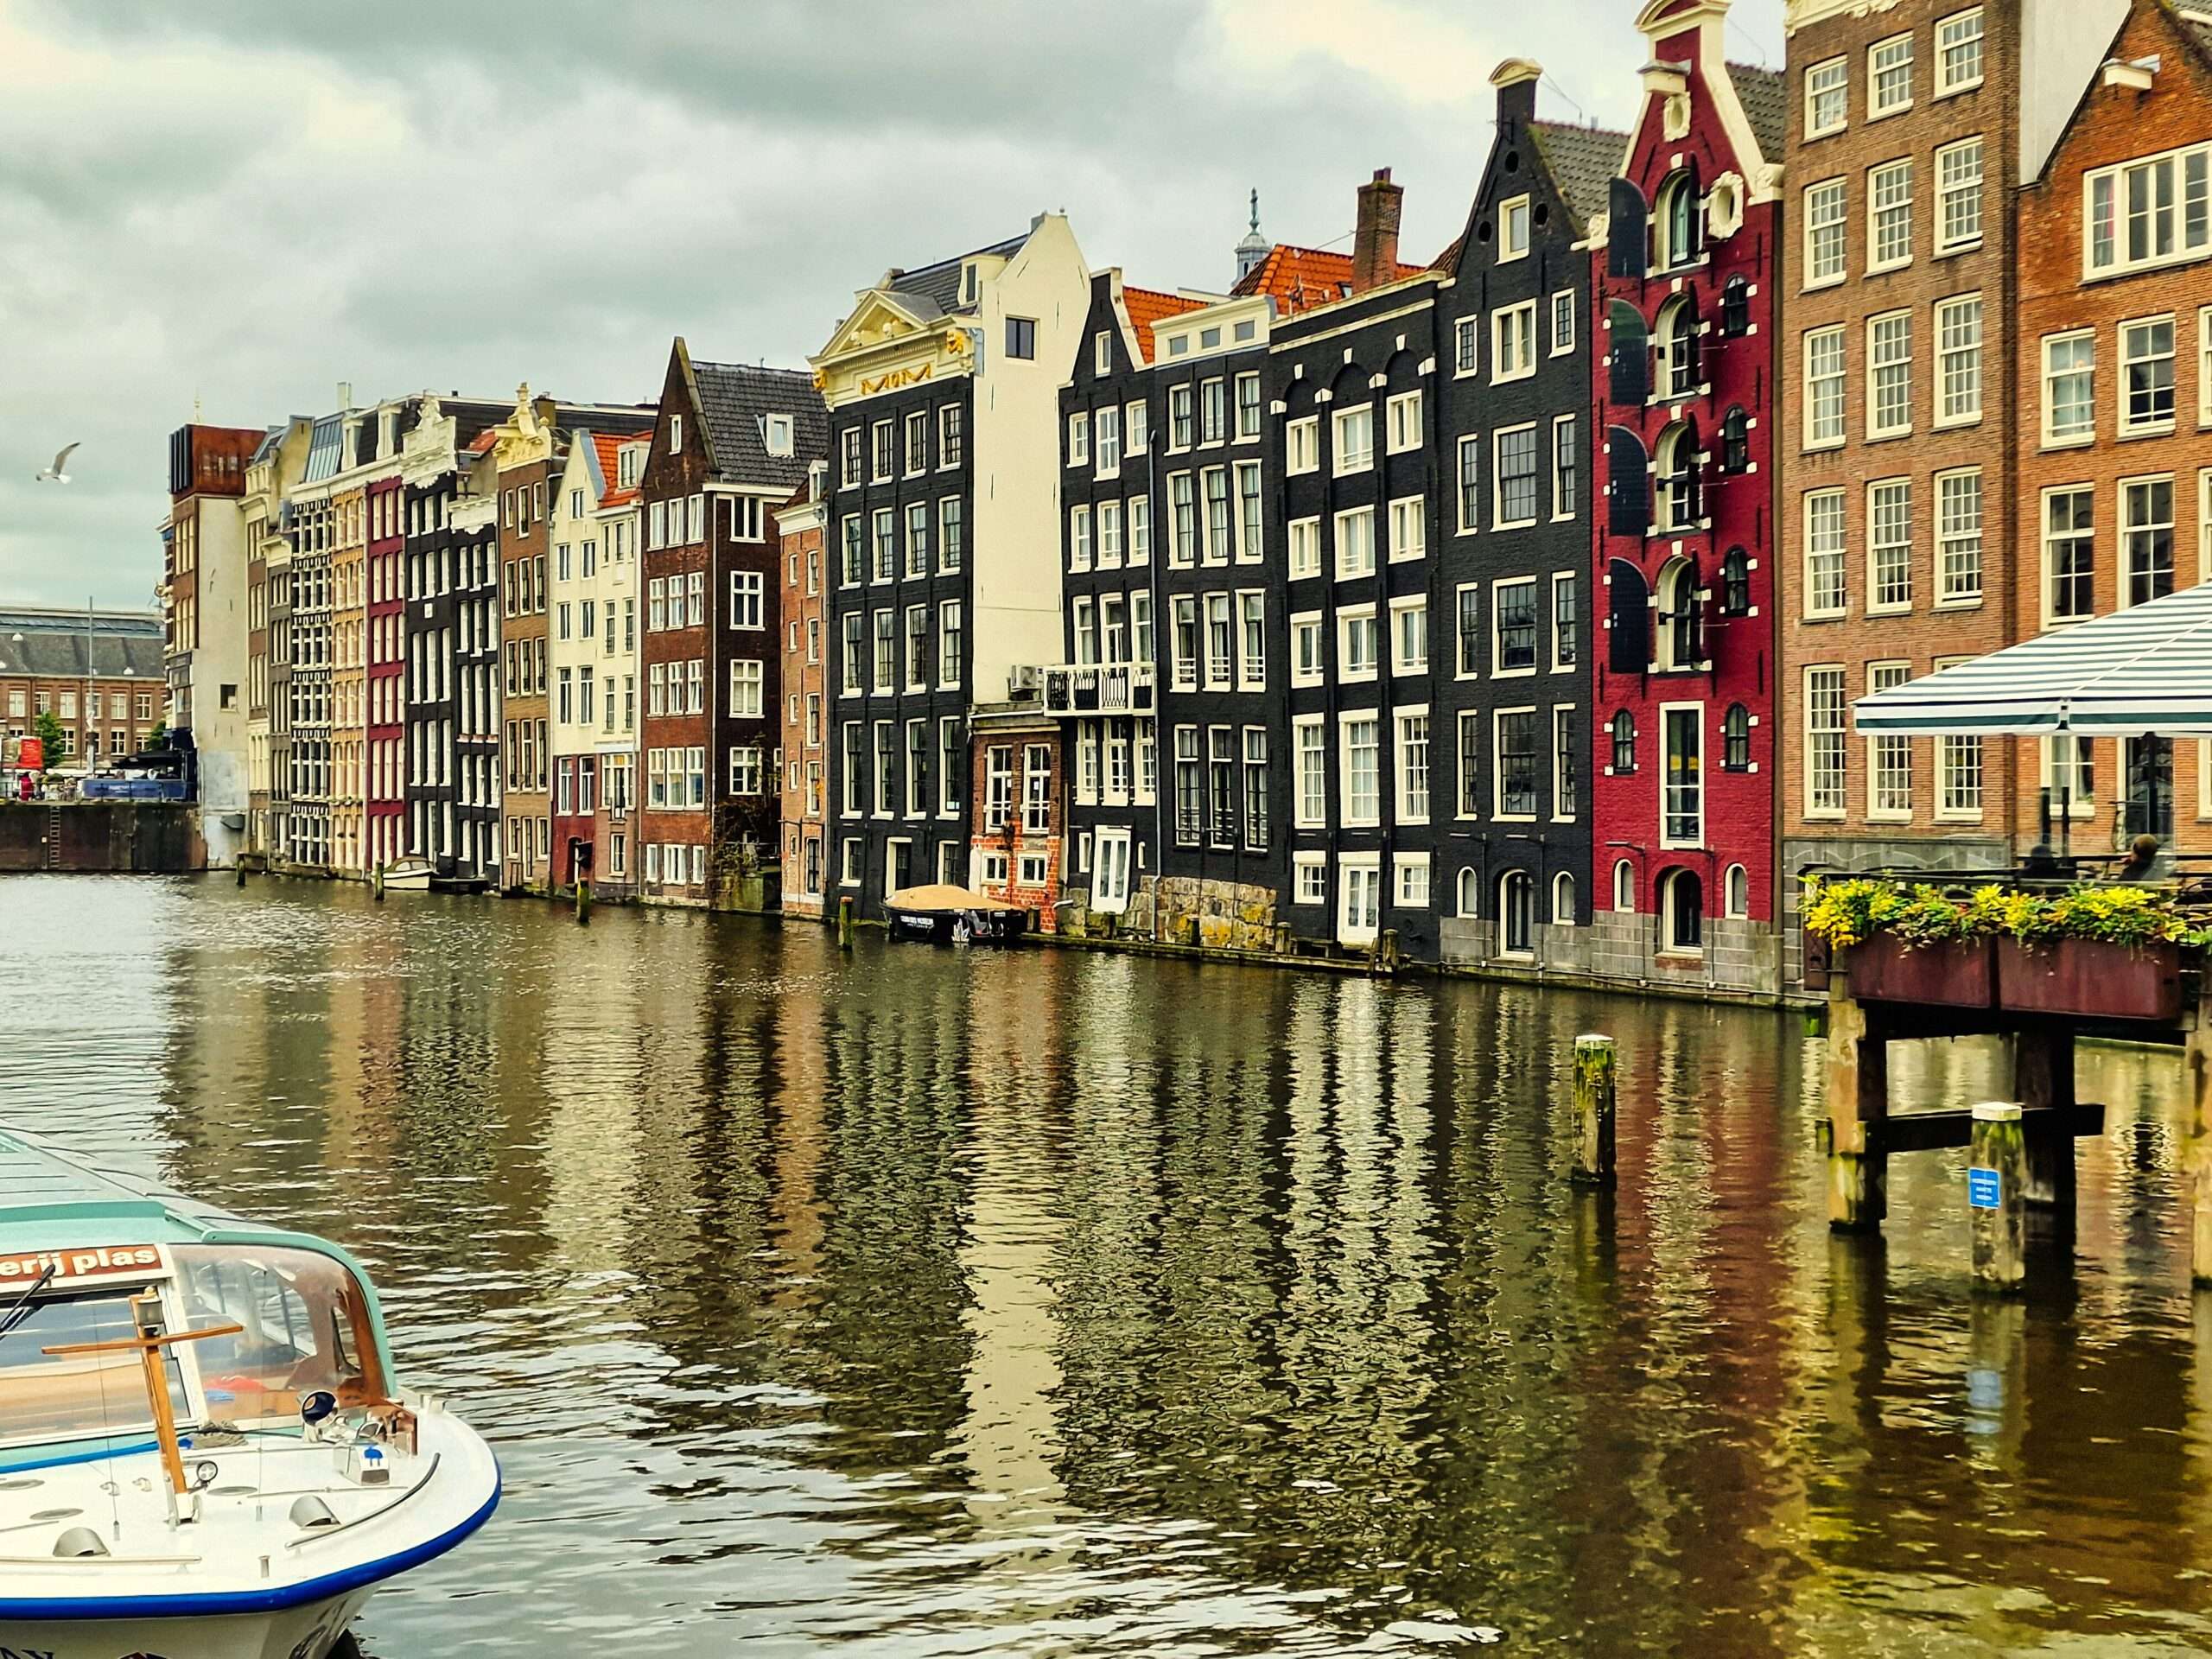 kamieniczki w niderlandzkim stylu nad jednym z kanałów Amsterdamu